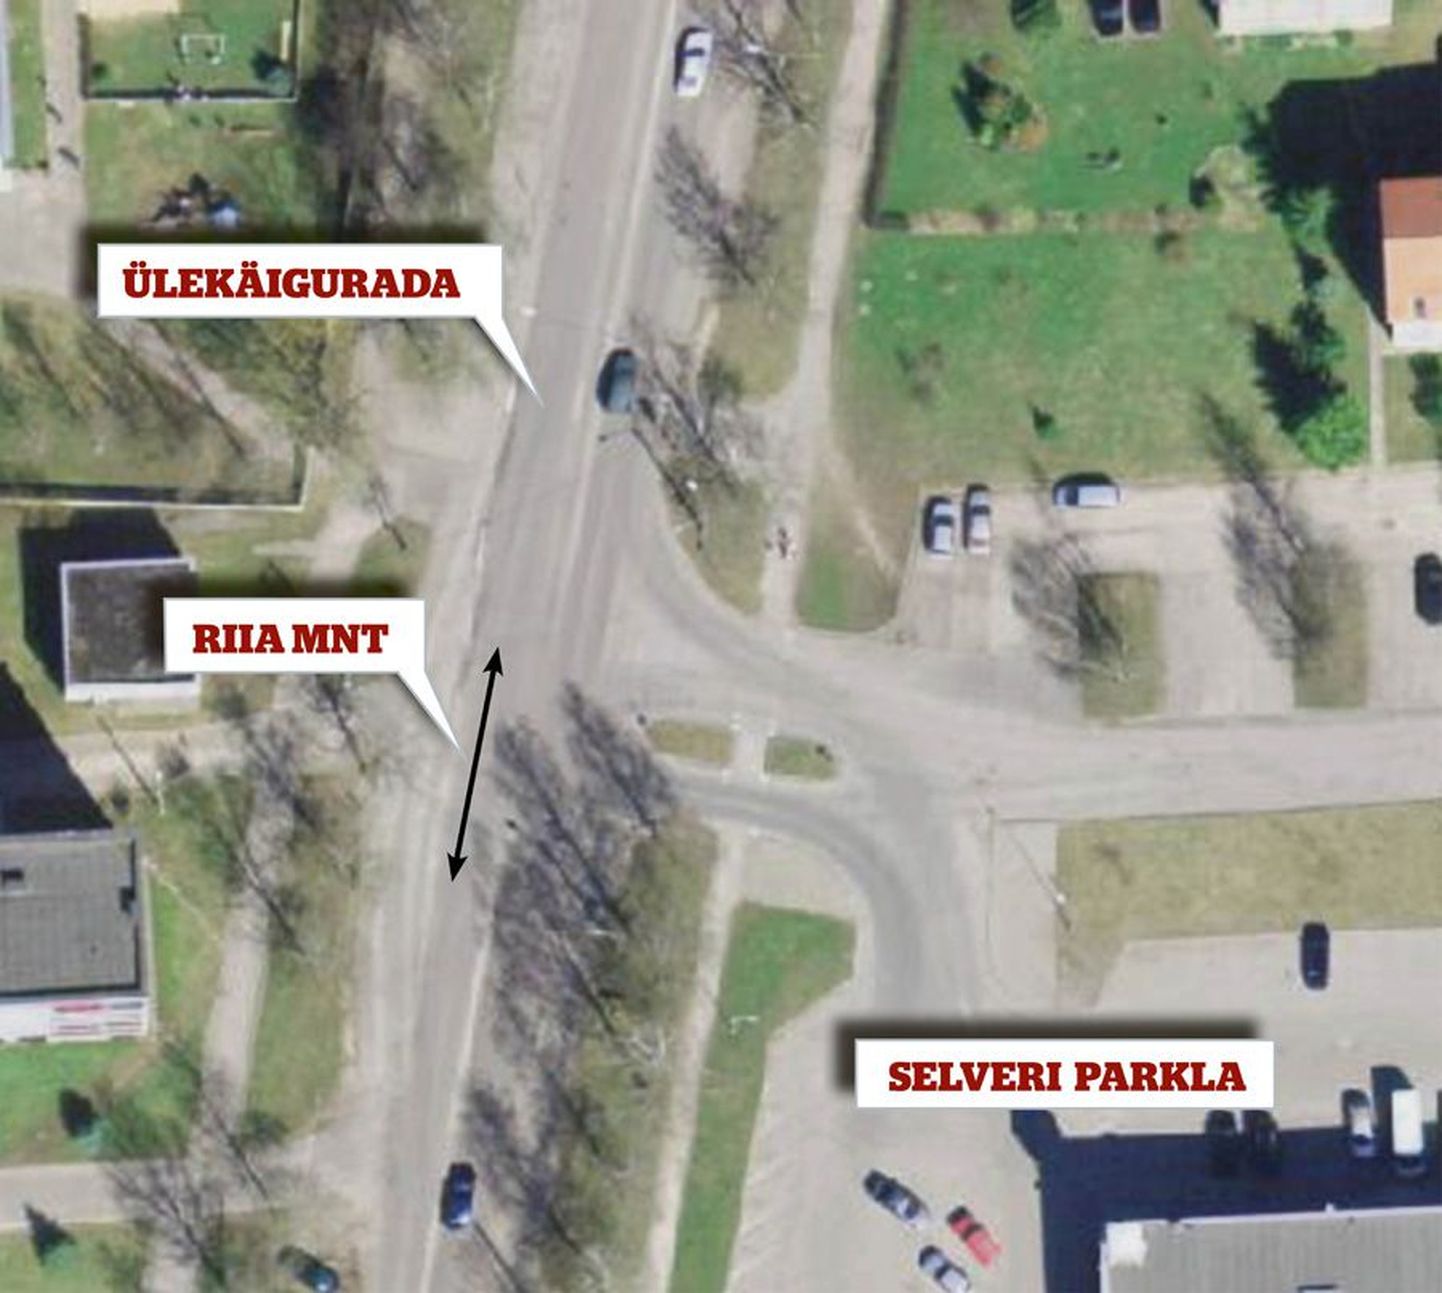 Maa-ameti kaardiserveri pildilt võib näha, et ülekäigurada asub Selveri ristmikul kohas, kus Riia maanteele väljasõitu sujuvamaks tegev ja suuremat pöörderaadiust võimaldav teelaiend on muutunud paralleelseks Riia maanteega. Seega paikneb ülekäigurada kas ristmiku piiril või vahetult ristmiku kõrval.